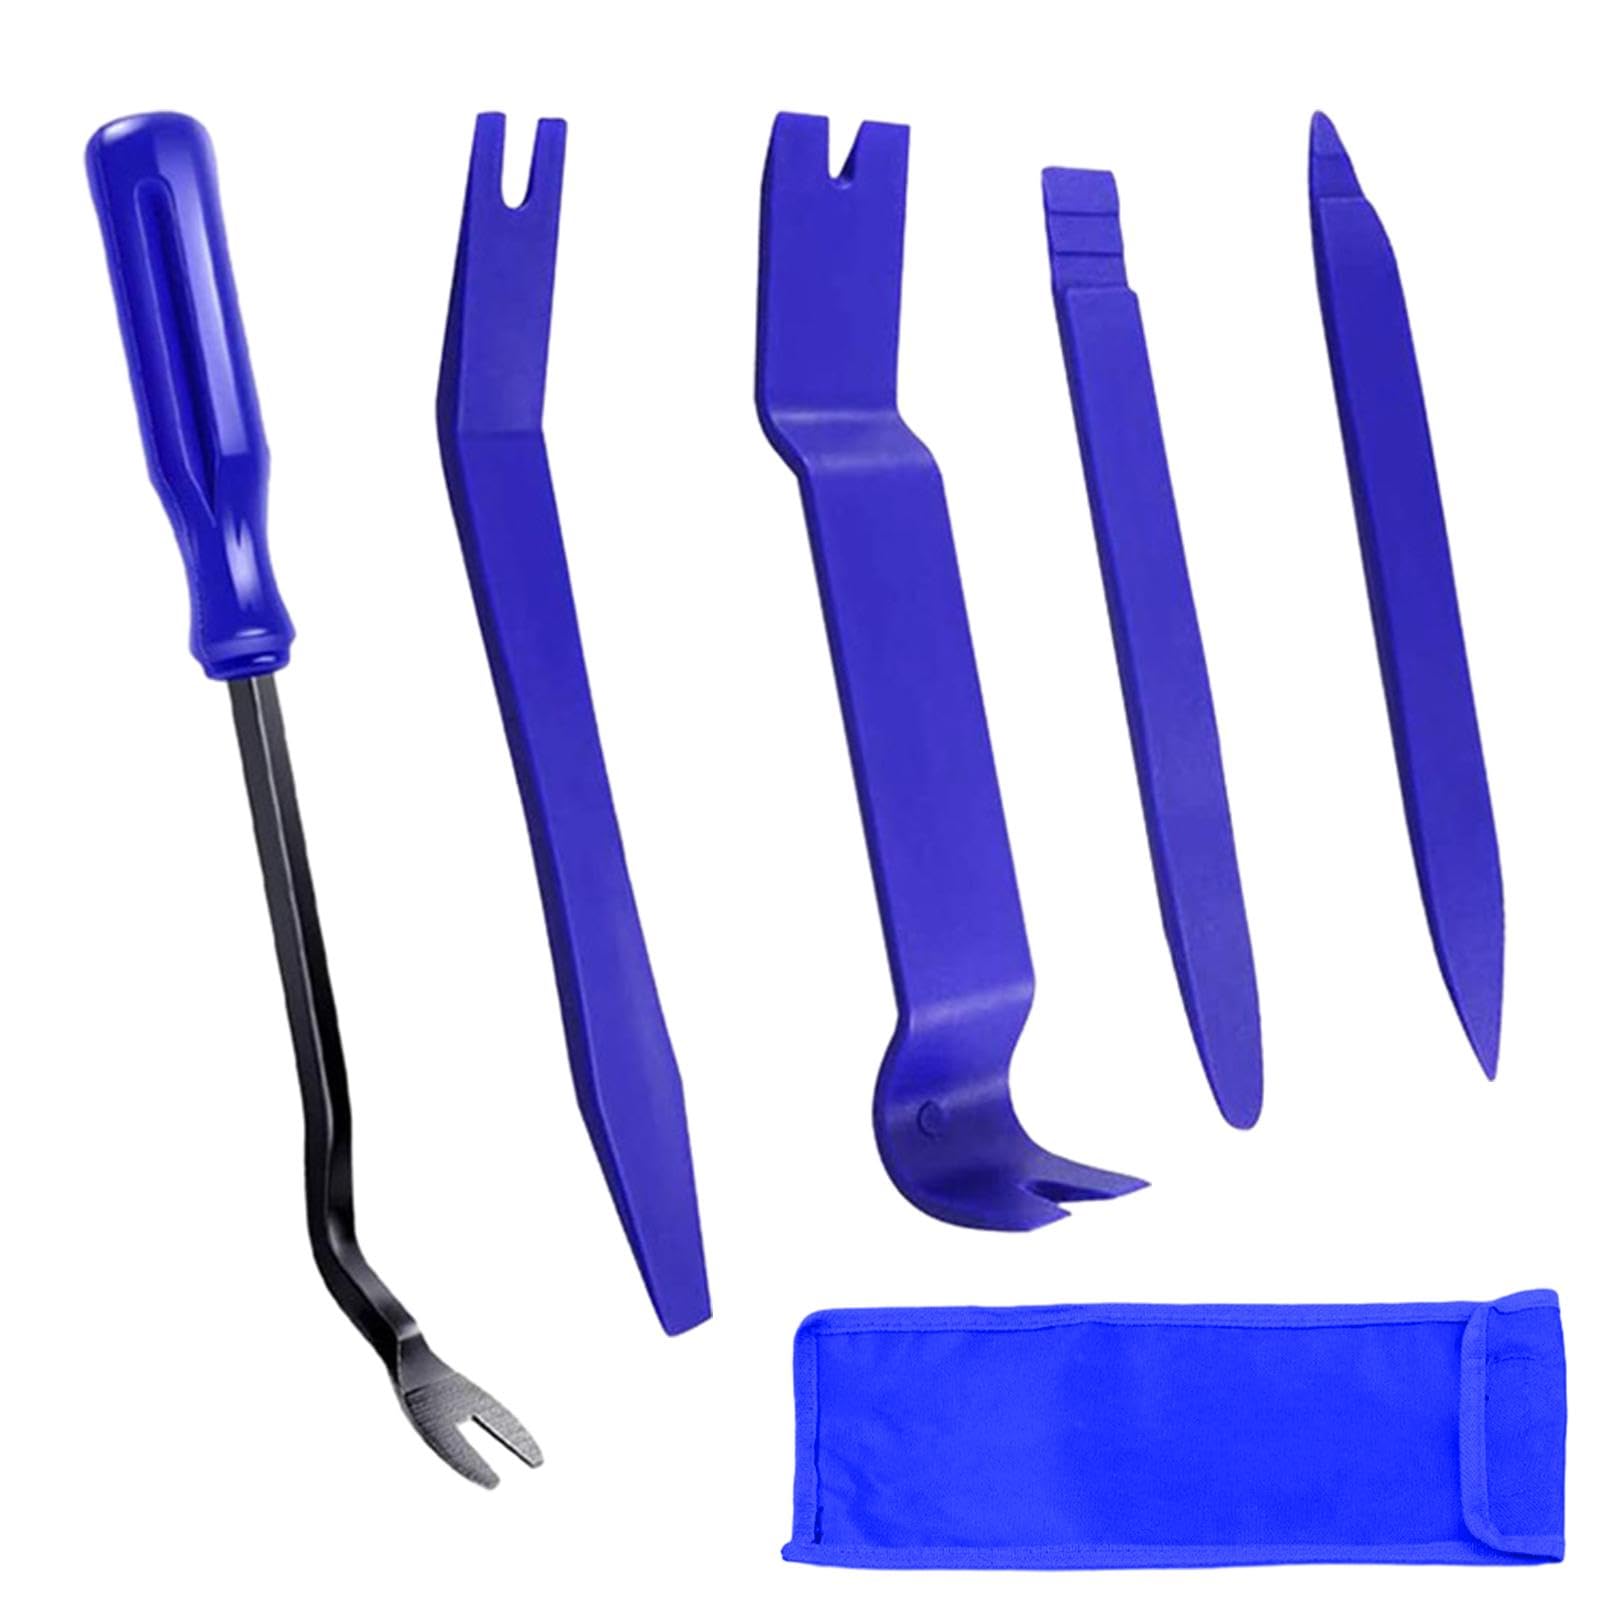 OTAIVE 5 Stück Auto Demontage Werkzeuge Werkzeug zum Entfernen der Autotürverkleidung Tools Zierleistenkeile Verkleidungs Werkzeug Werkzeugsatz zum Zerlegen von automatischen Türverkleidungen(blau) von OTAIVE